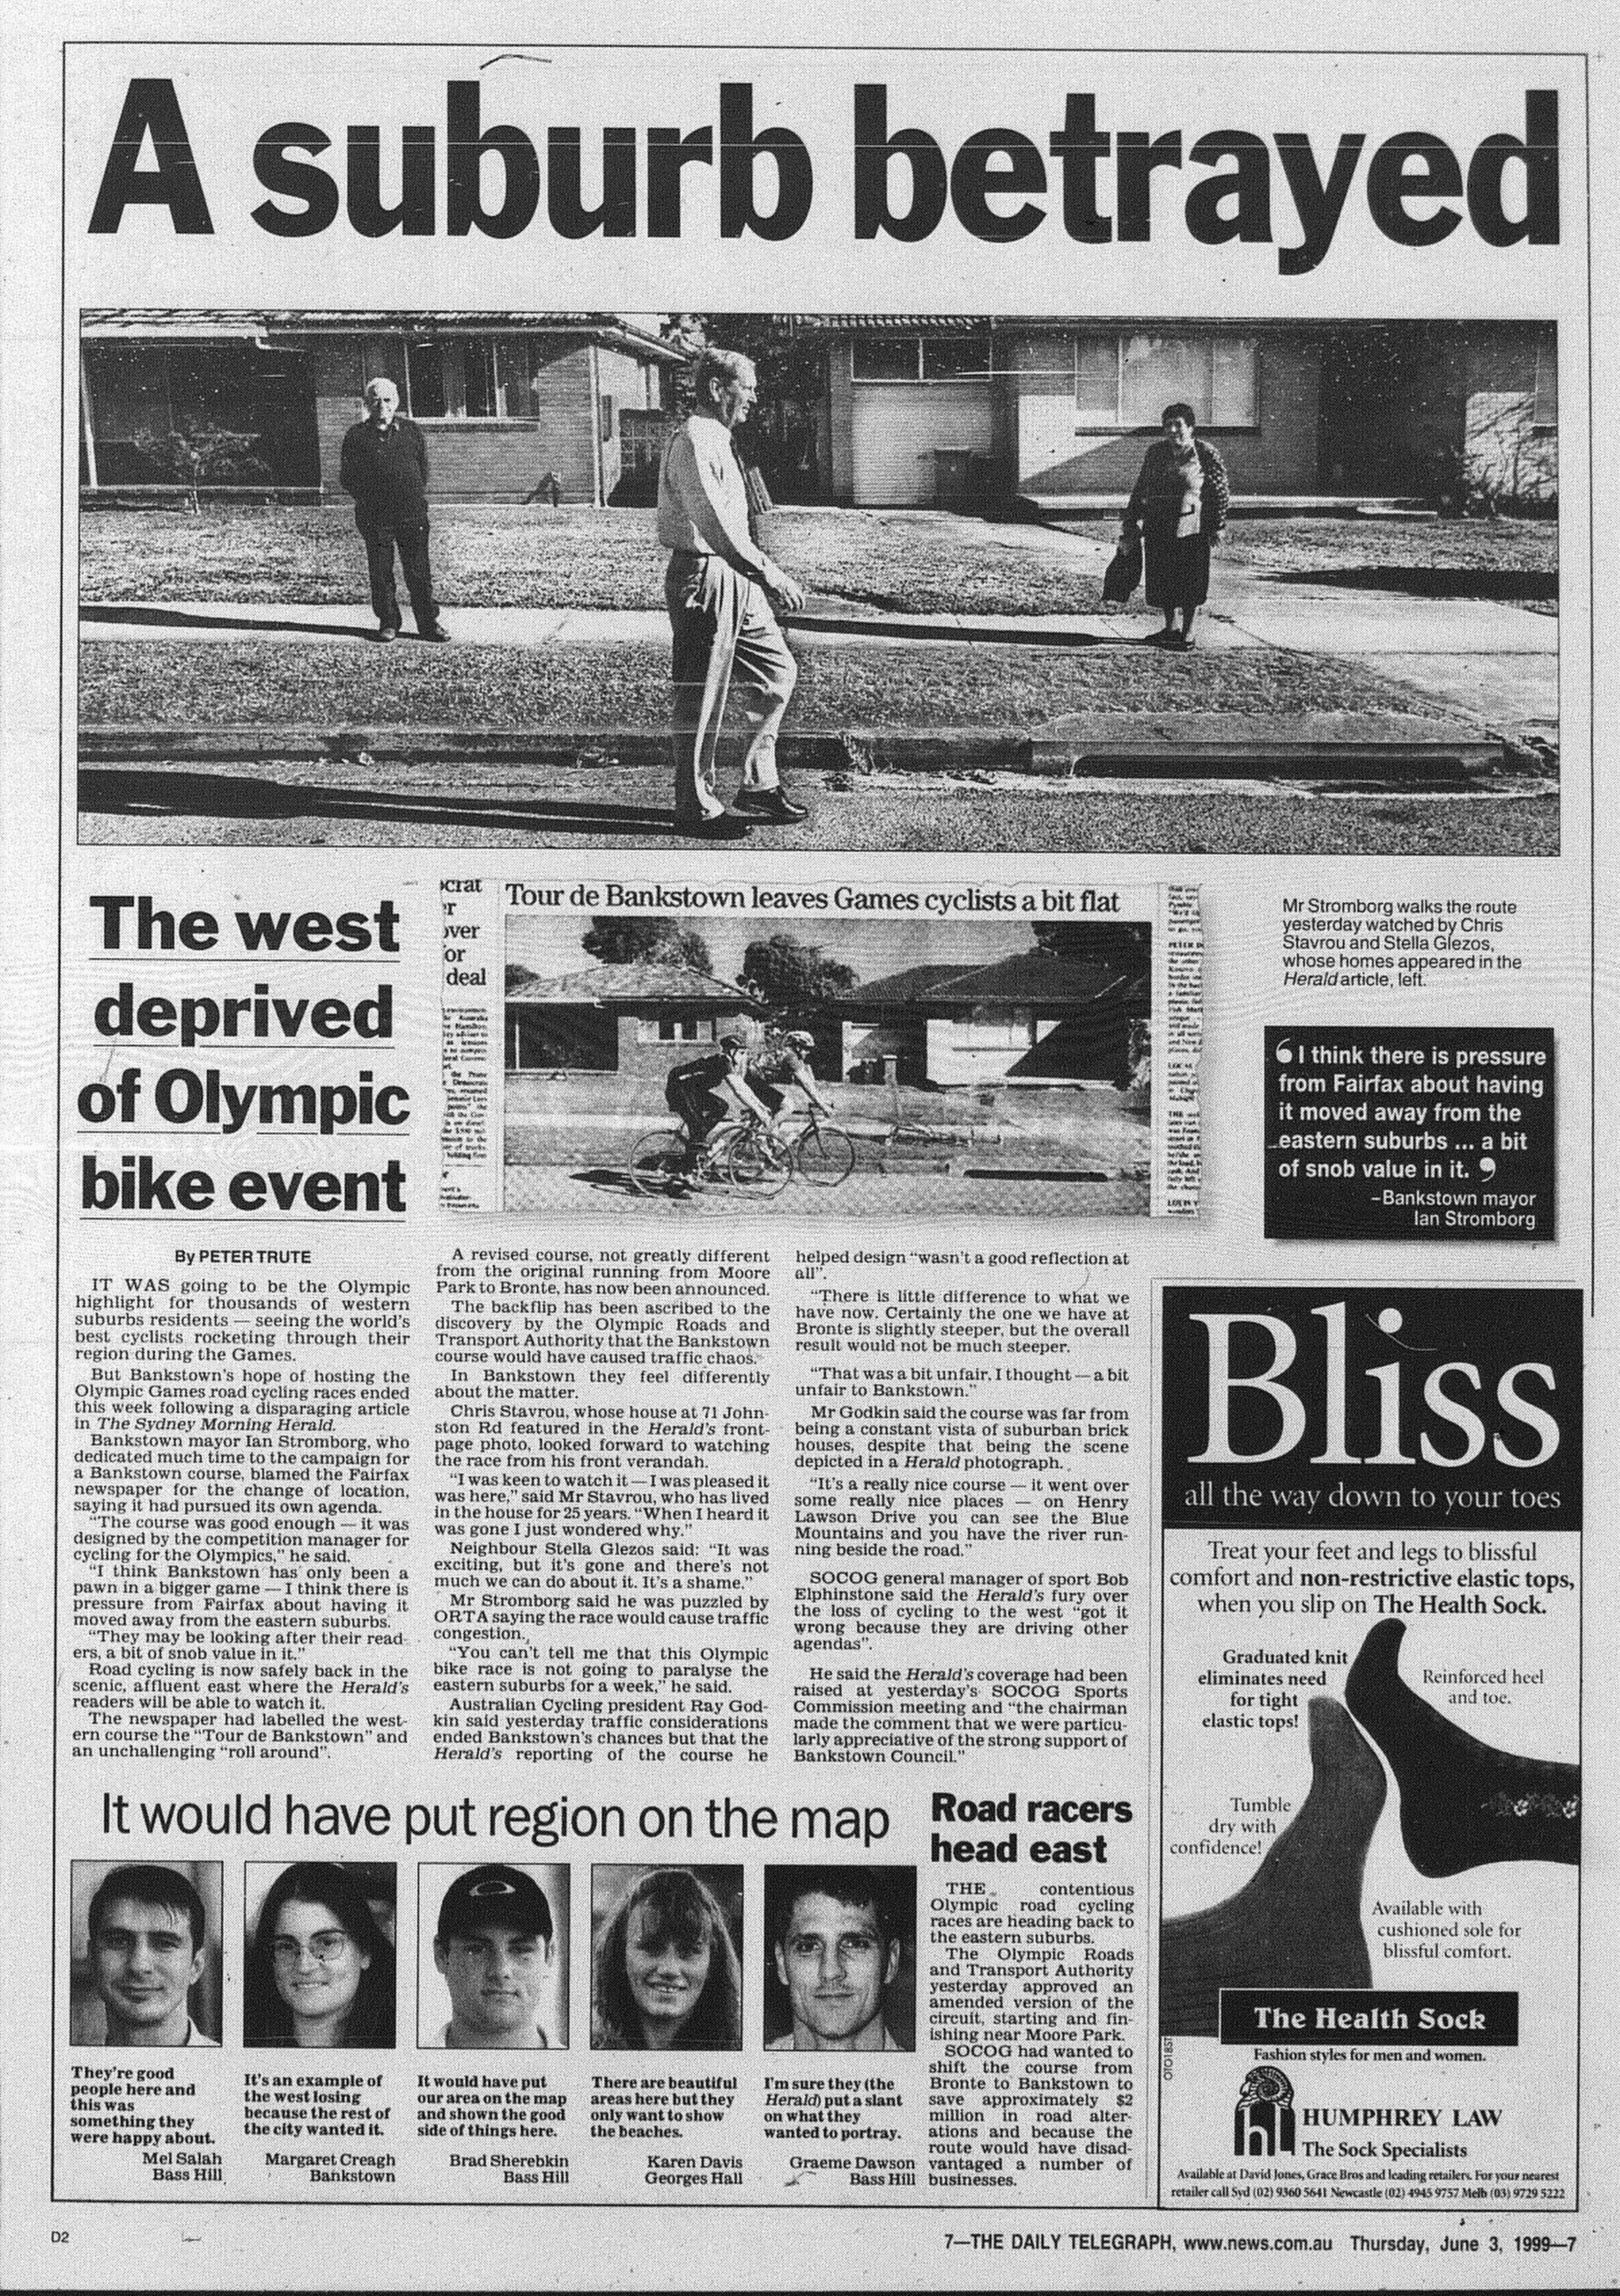 Olympic Road Racing June 3 1999 daily telegraph 7